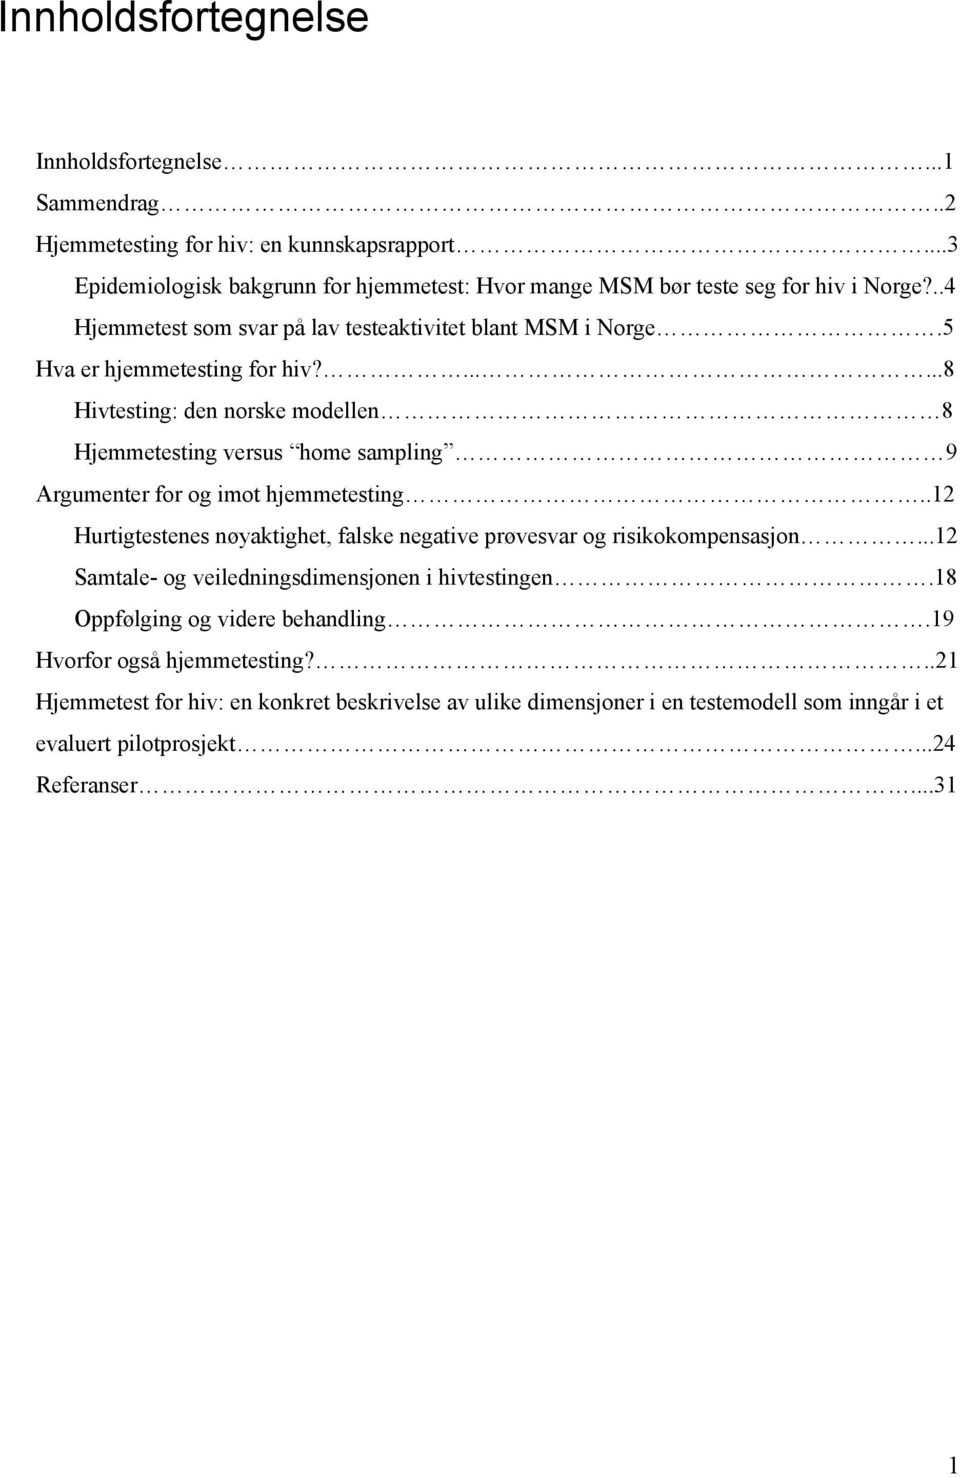 ......8 Hivtesting: den norske modellen 8 Hjemmetesting versus home sampling 9 Argumenter for og imot hjemmetesting.